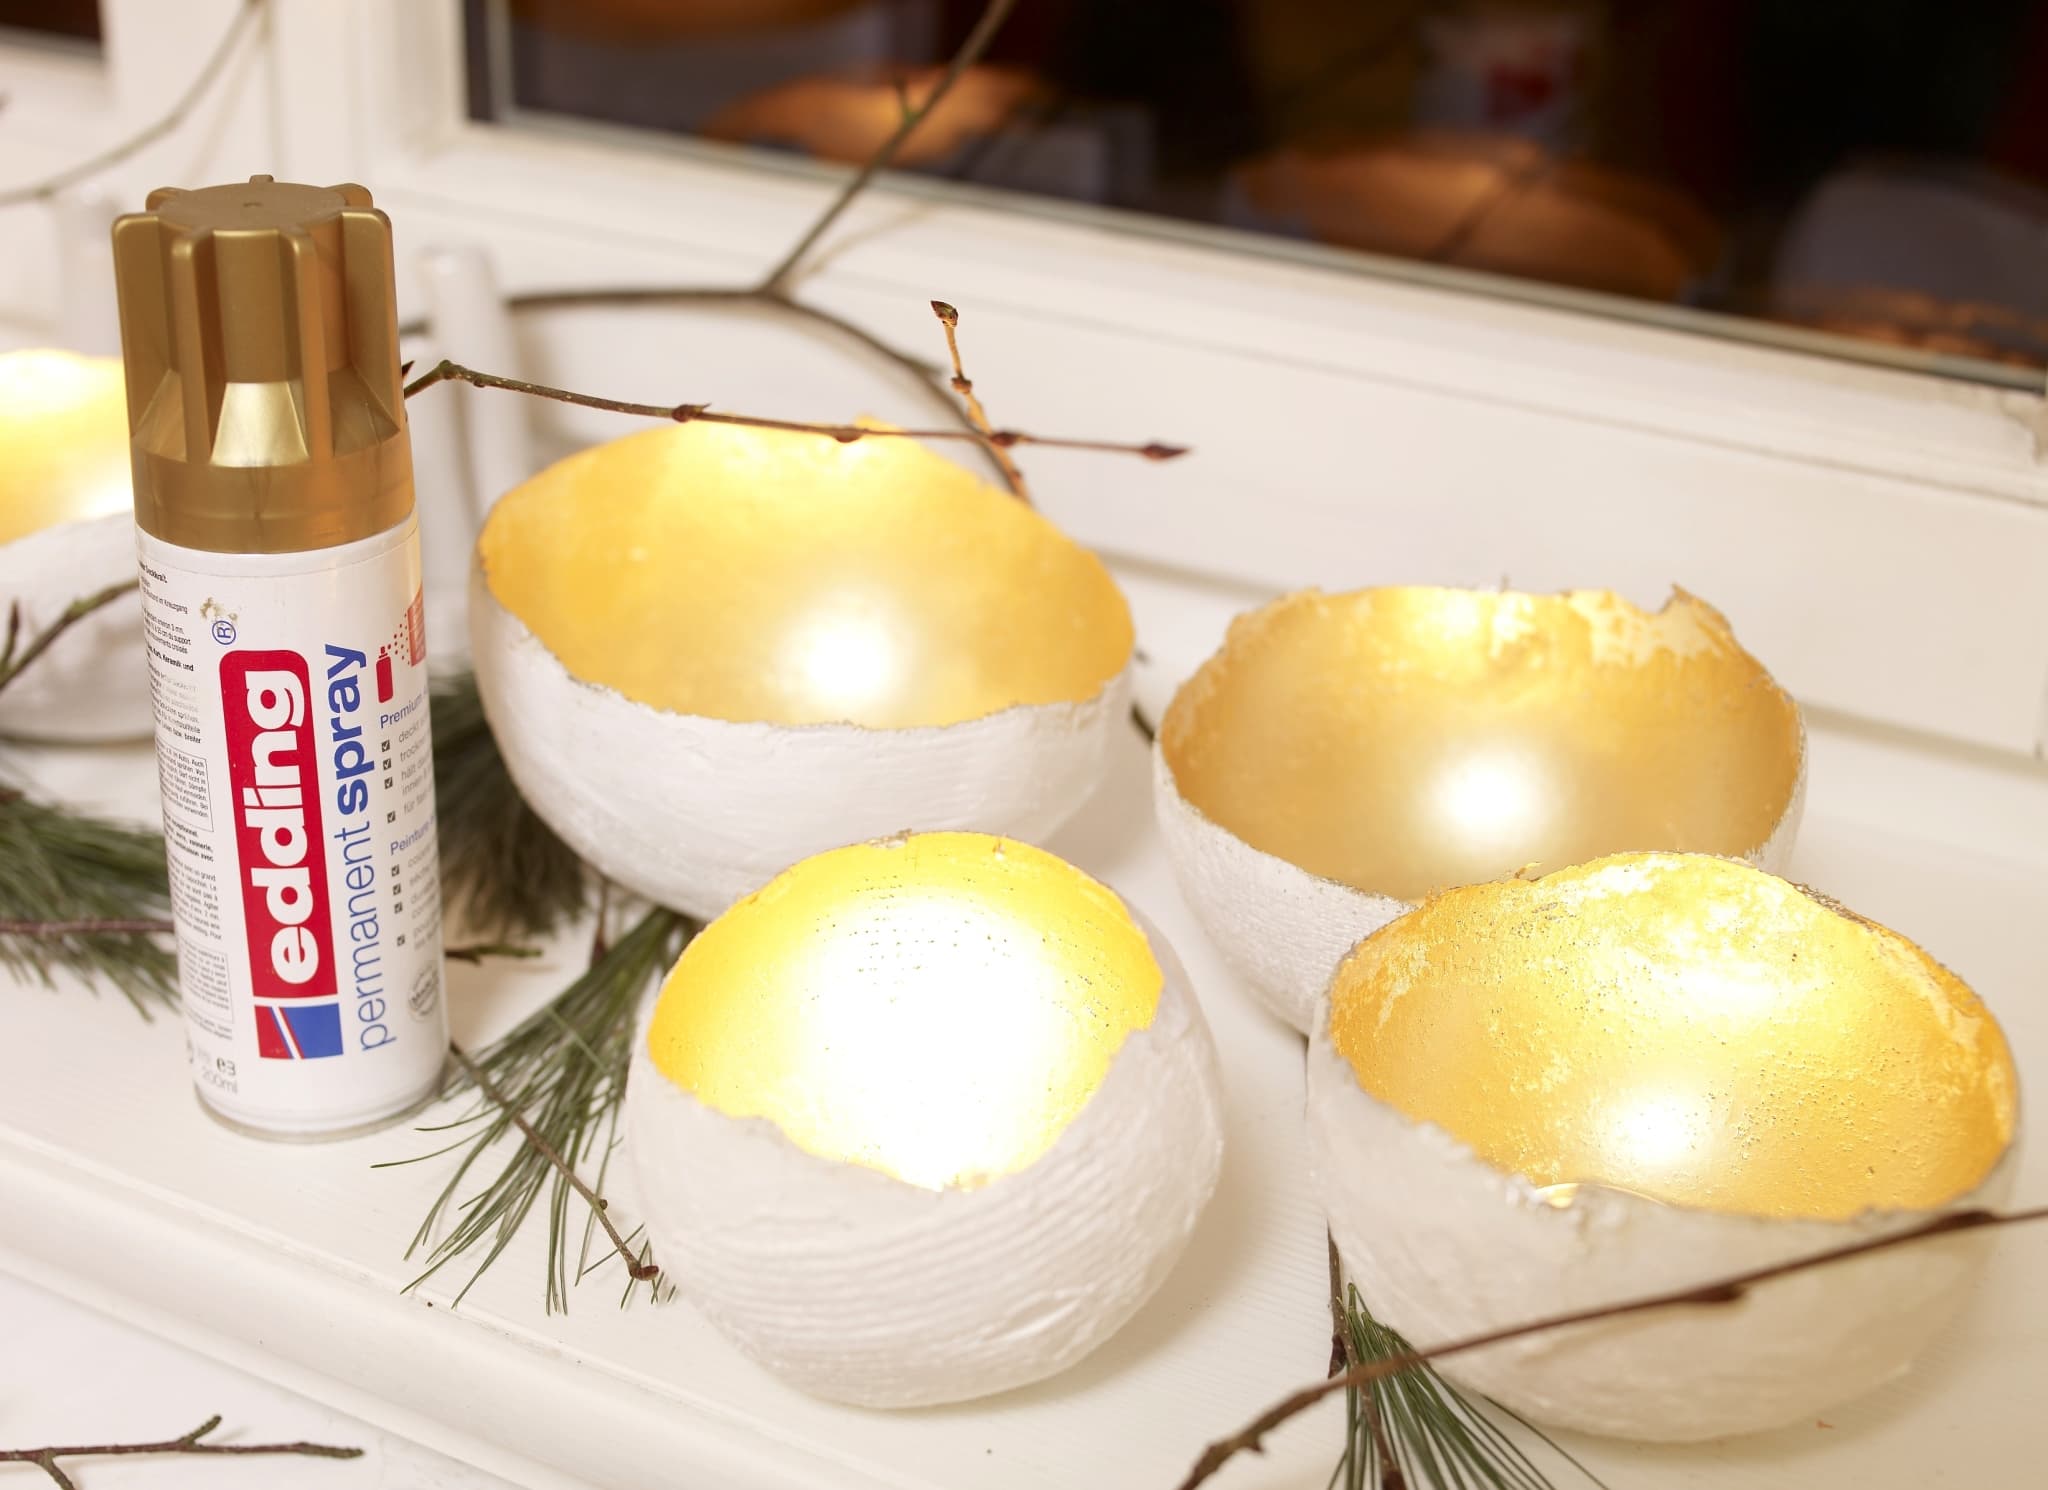 Golden bemalte Eierschalen in einer dekorativen Anordnung mit einer Dosis edding 5200 Permanentspray Metallic Acryllack in der Nähe.